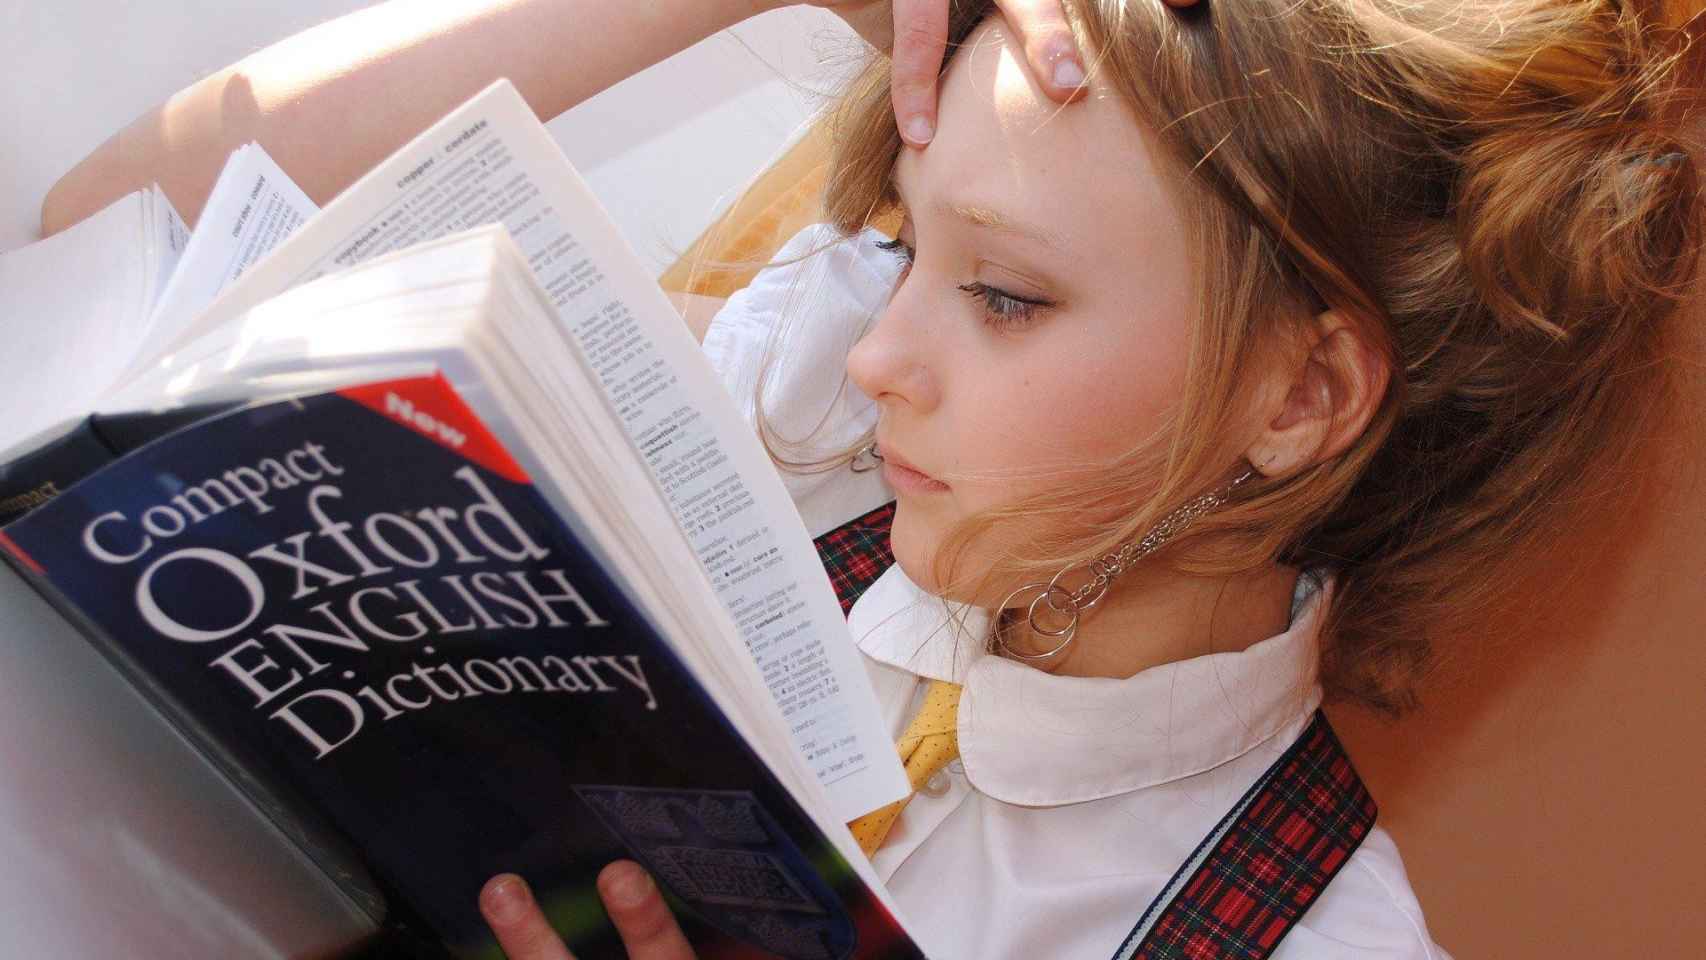 Una chica estudia inglés concentrada